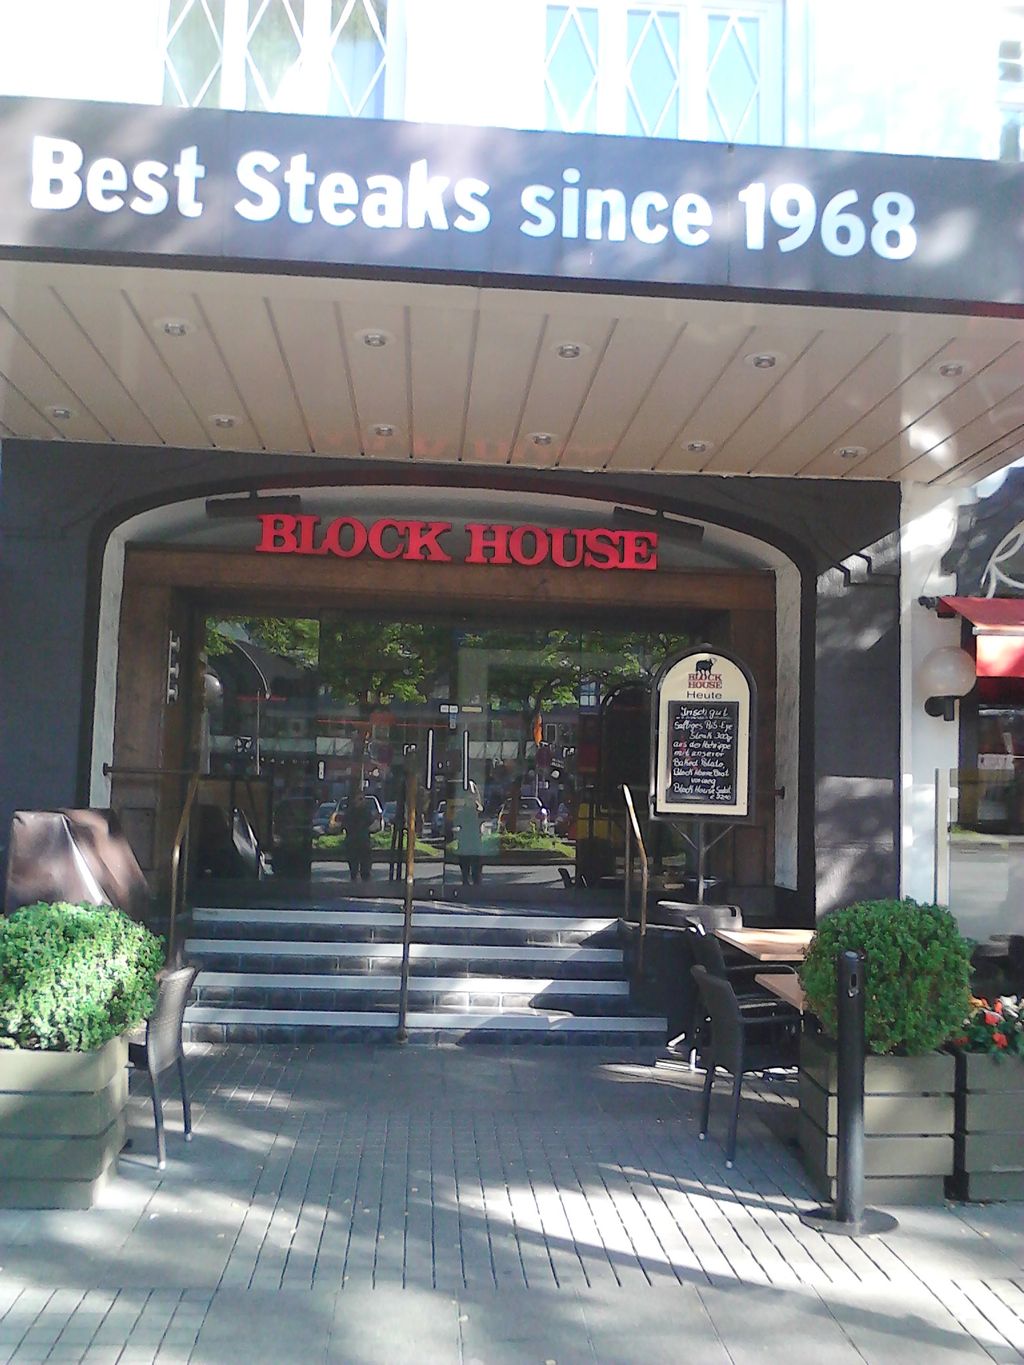 Nutzerfoto 6 BLOCK HOUSE Steakrestaurant